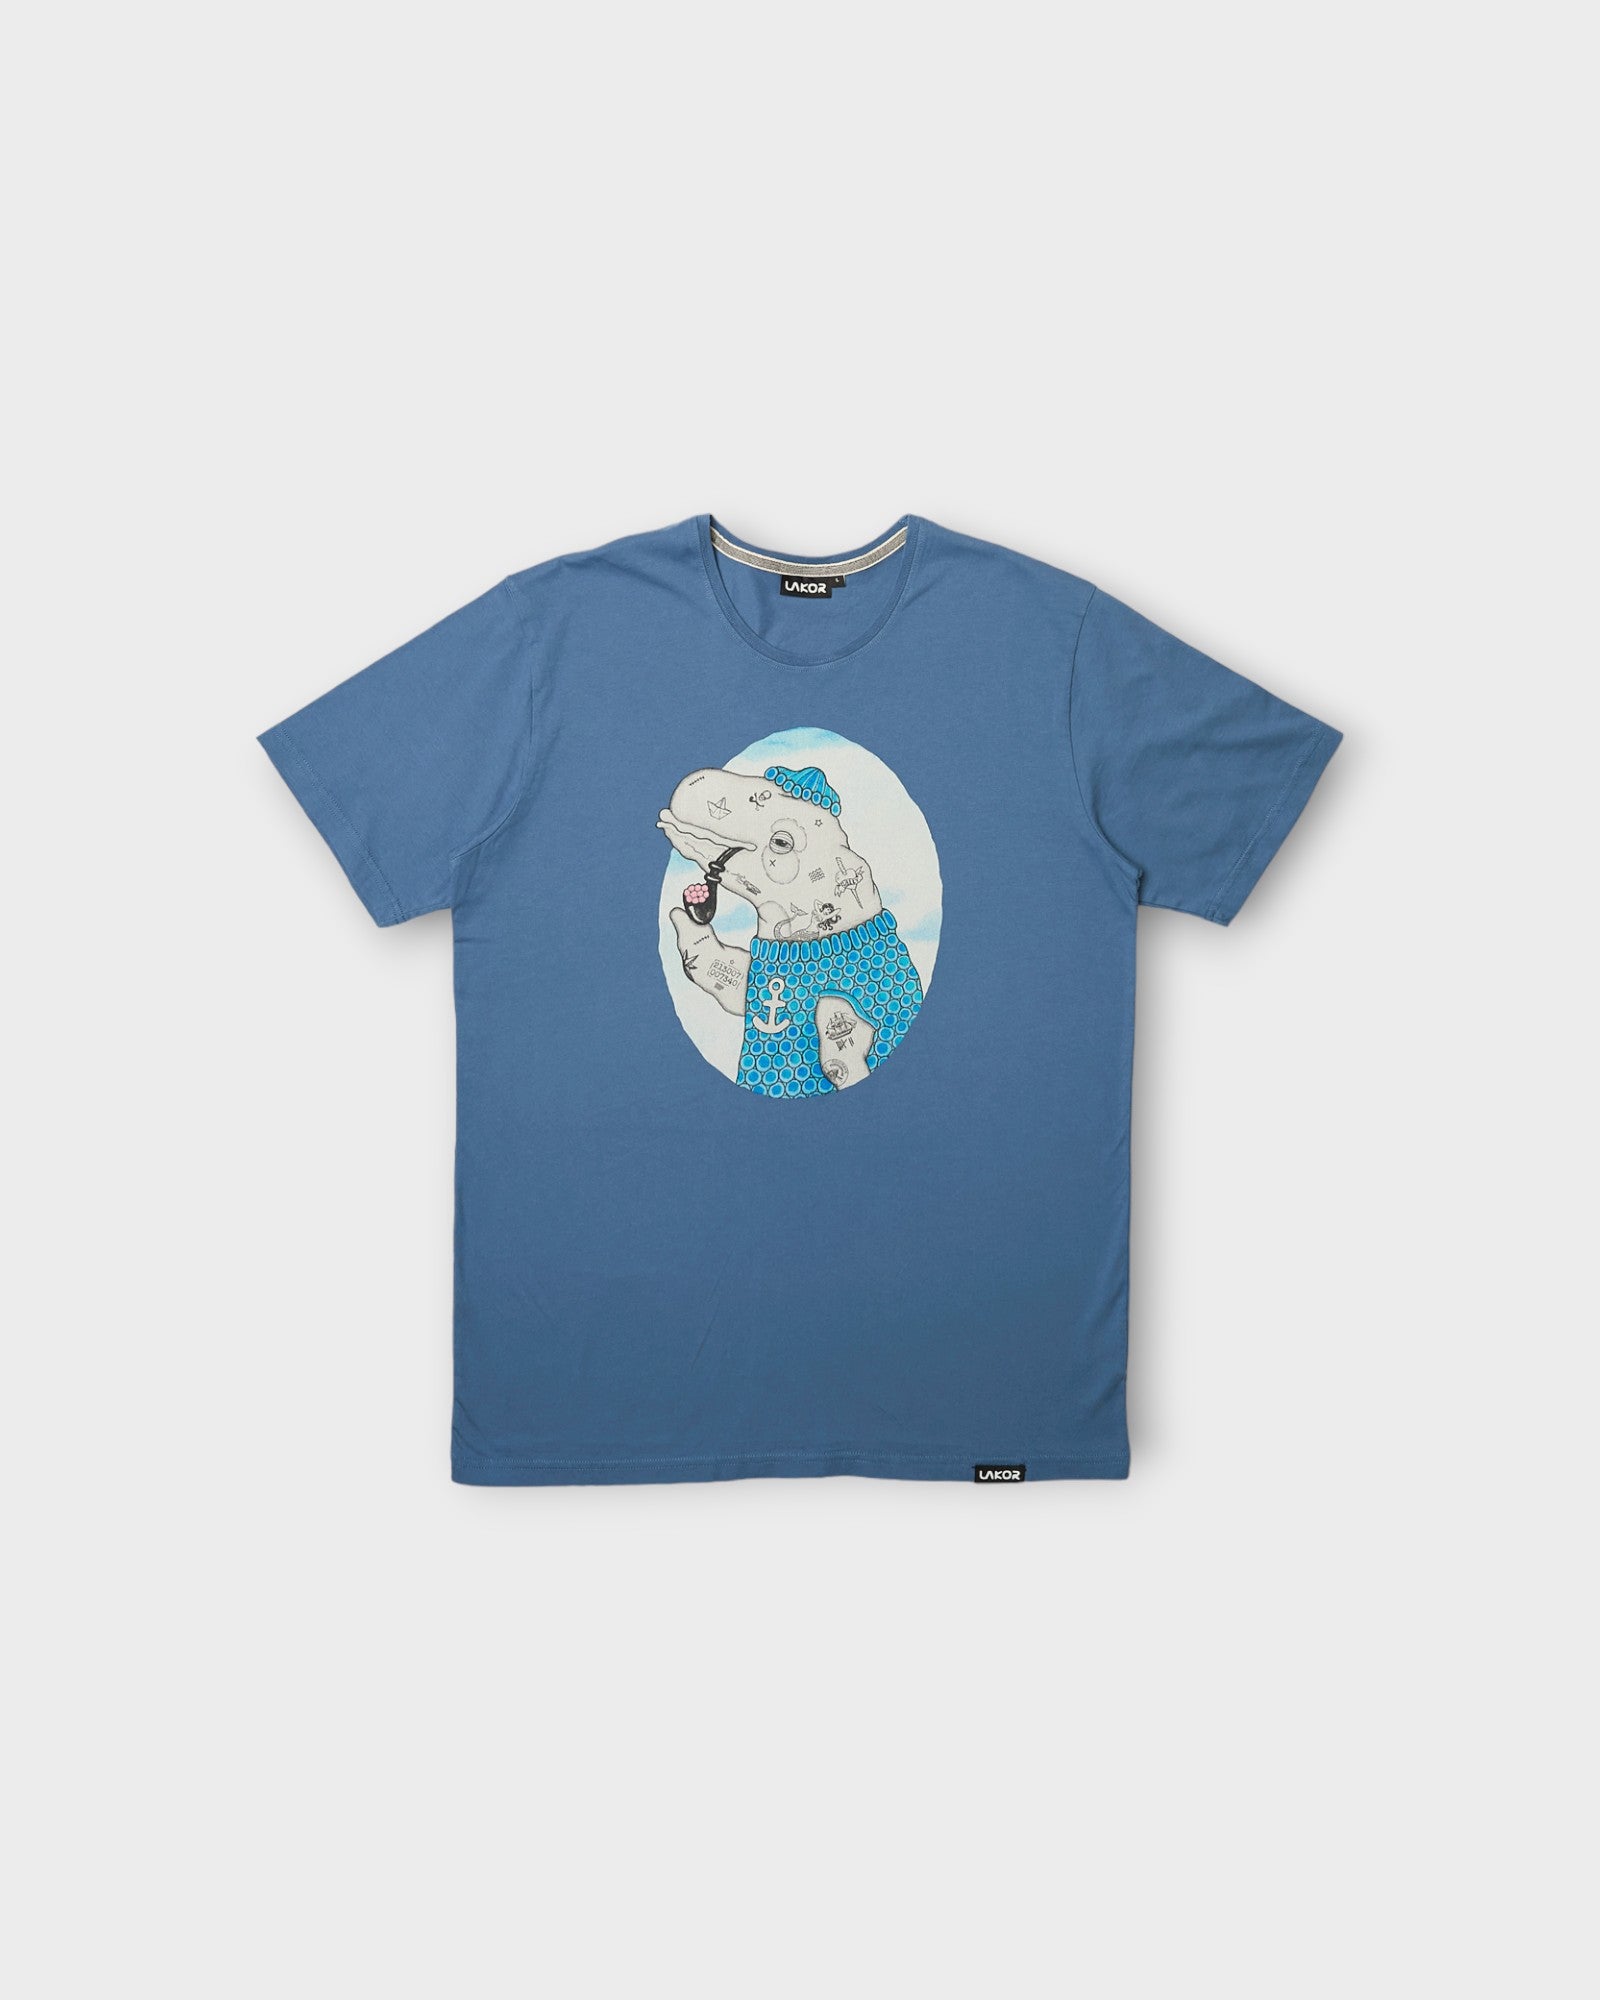 Badass Beluga T-shirt Bering Sea - Blå Lakor Soulwear T-shirt til Mænd. Her set forfra.